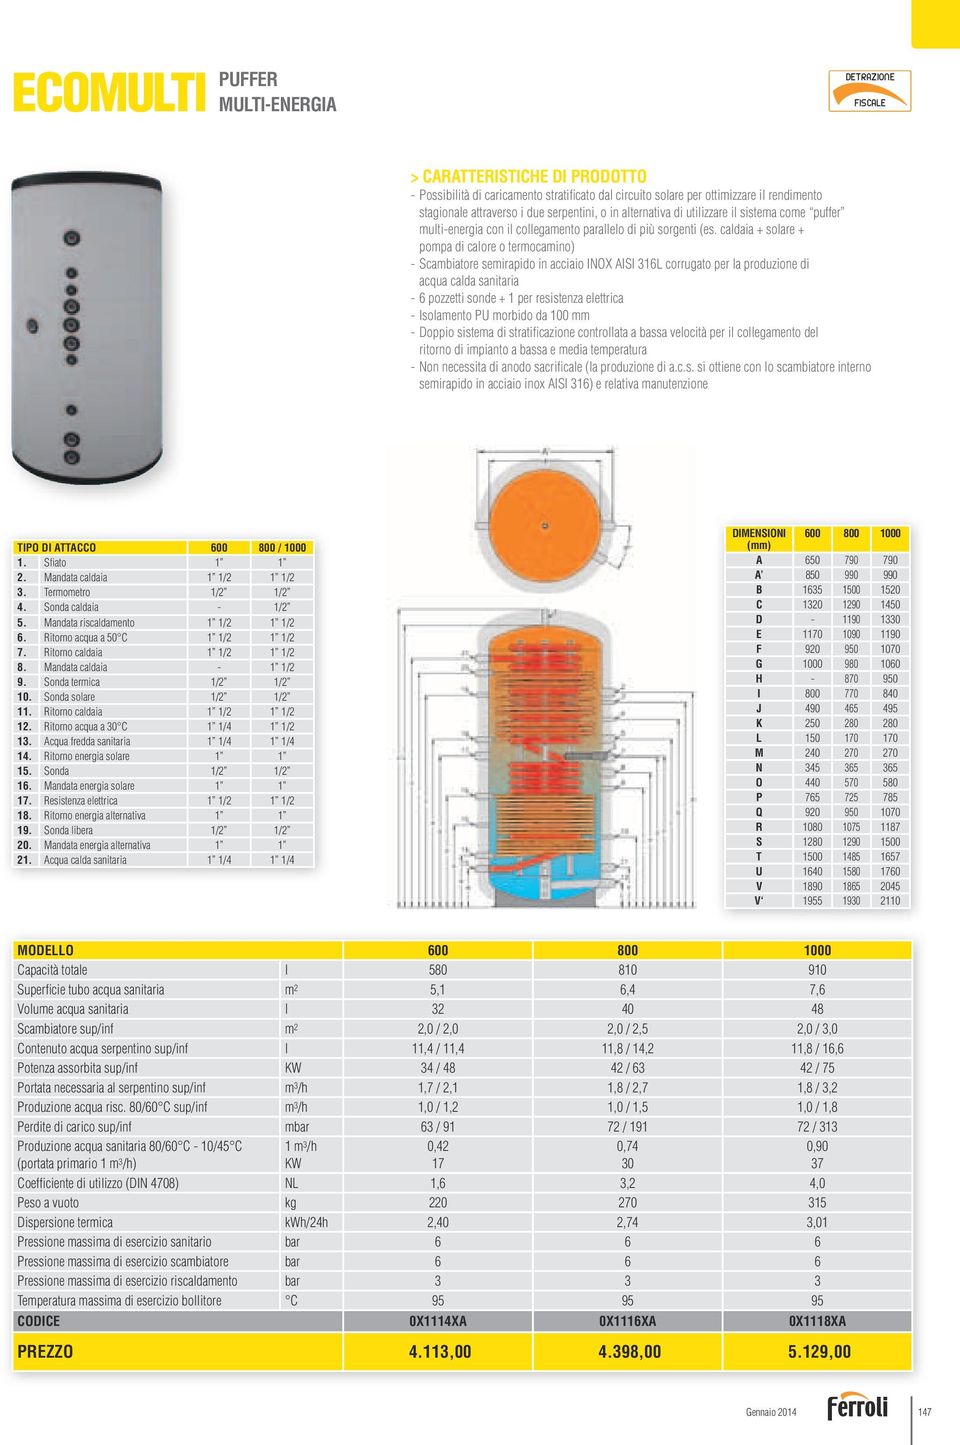 caldaia + solare + pompa di calore o termocamino) - Scambiatore semirapido in acciaio INOX AISI 316L corrugato per la produzione di acqua calda sanitaria - 6 pozzetti sonde + 1 per resistenza